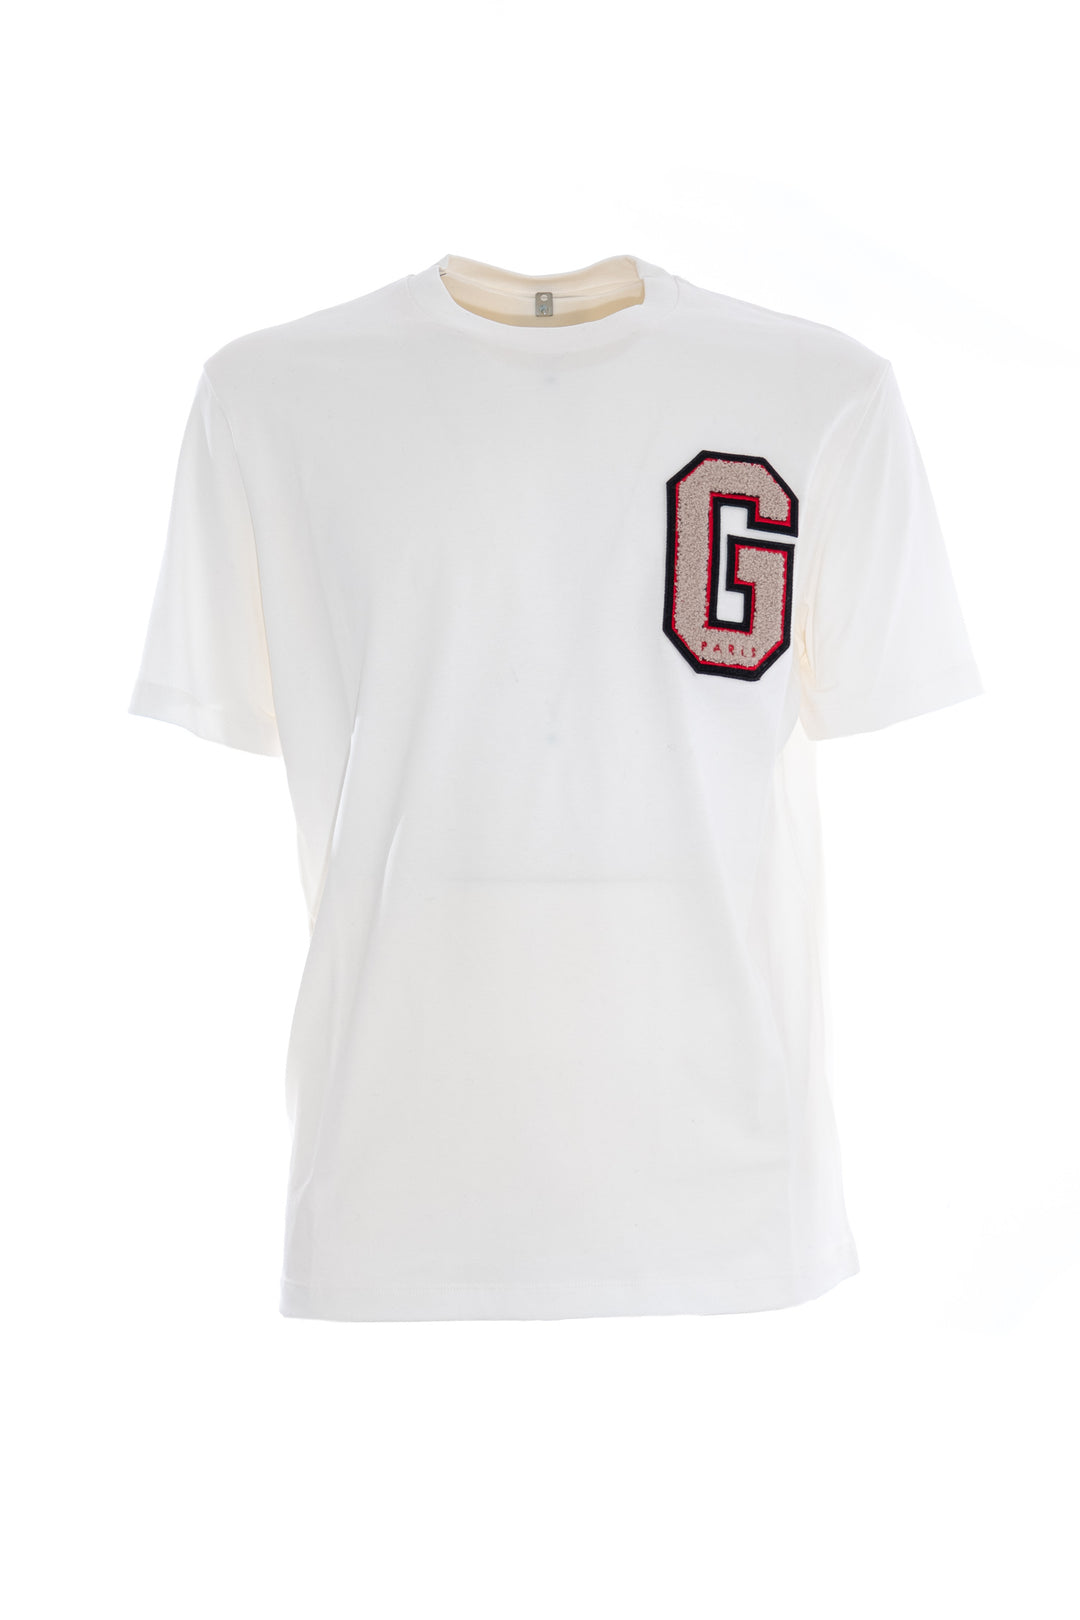 GAELLE T-shirt bianca in cotone con logo in punto spugna ricamato - Mancinelli 1954